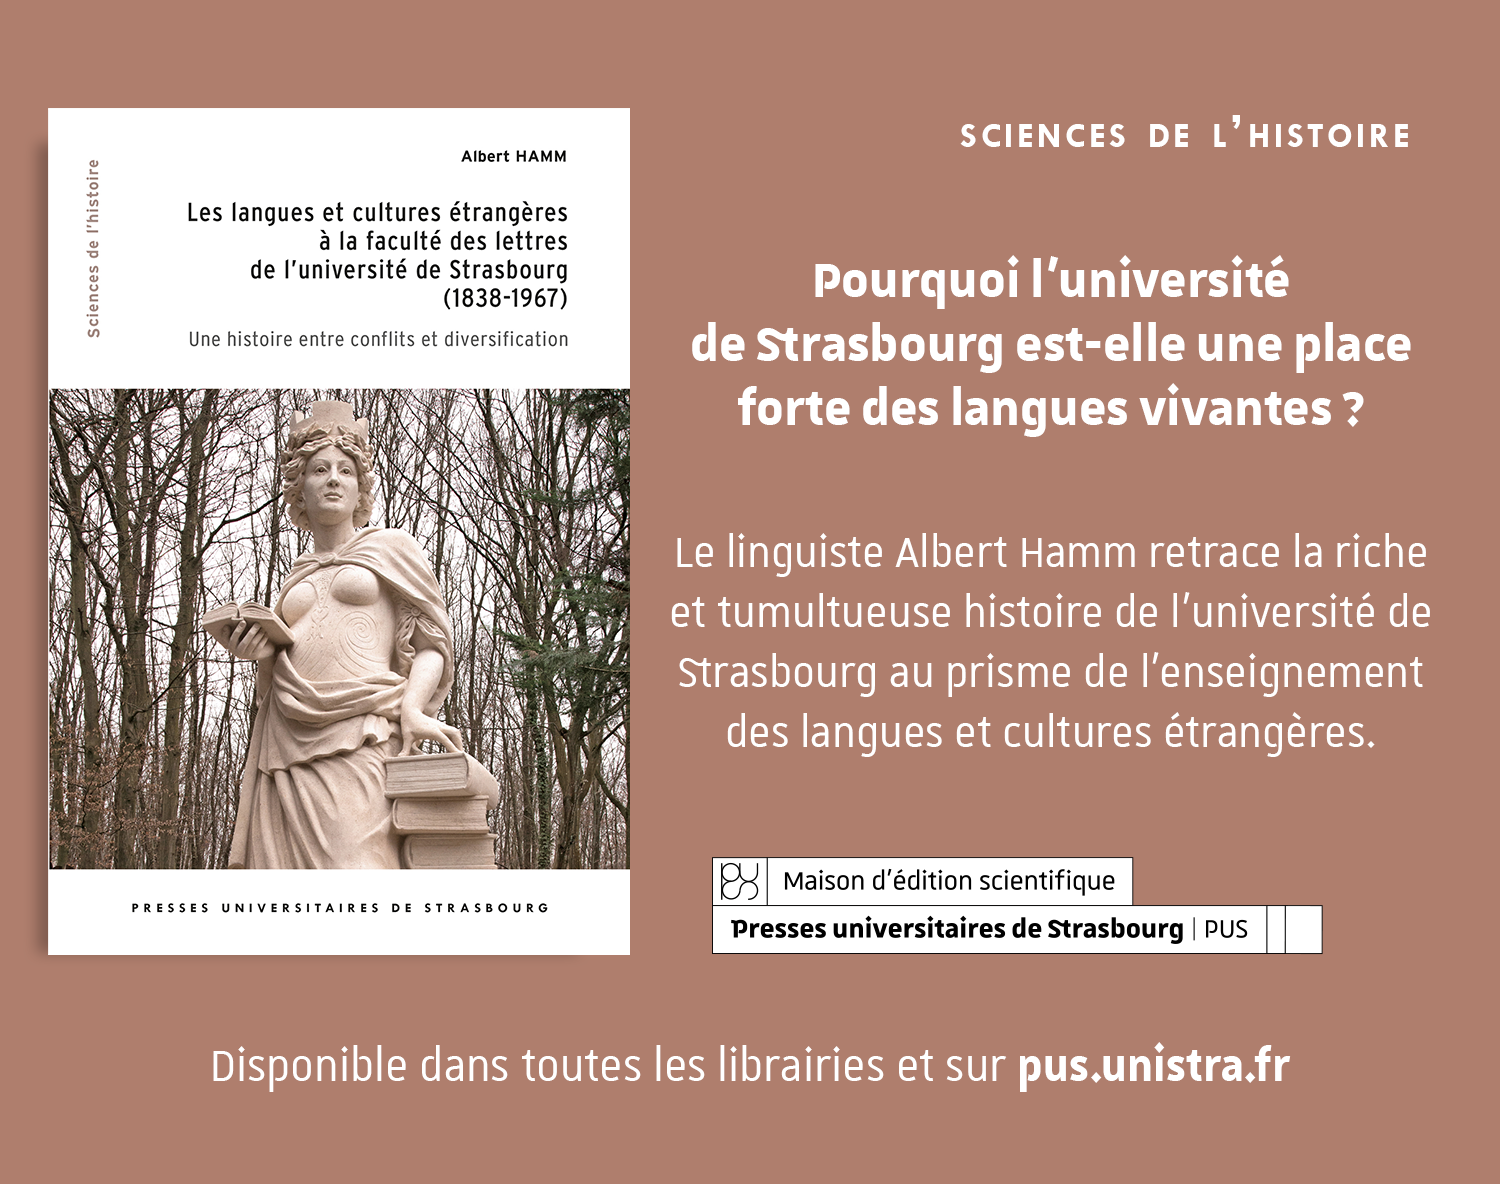 Les langues vivantes et cultures étrangères à la faculté des lettres de l'université de Strasbourg.